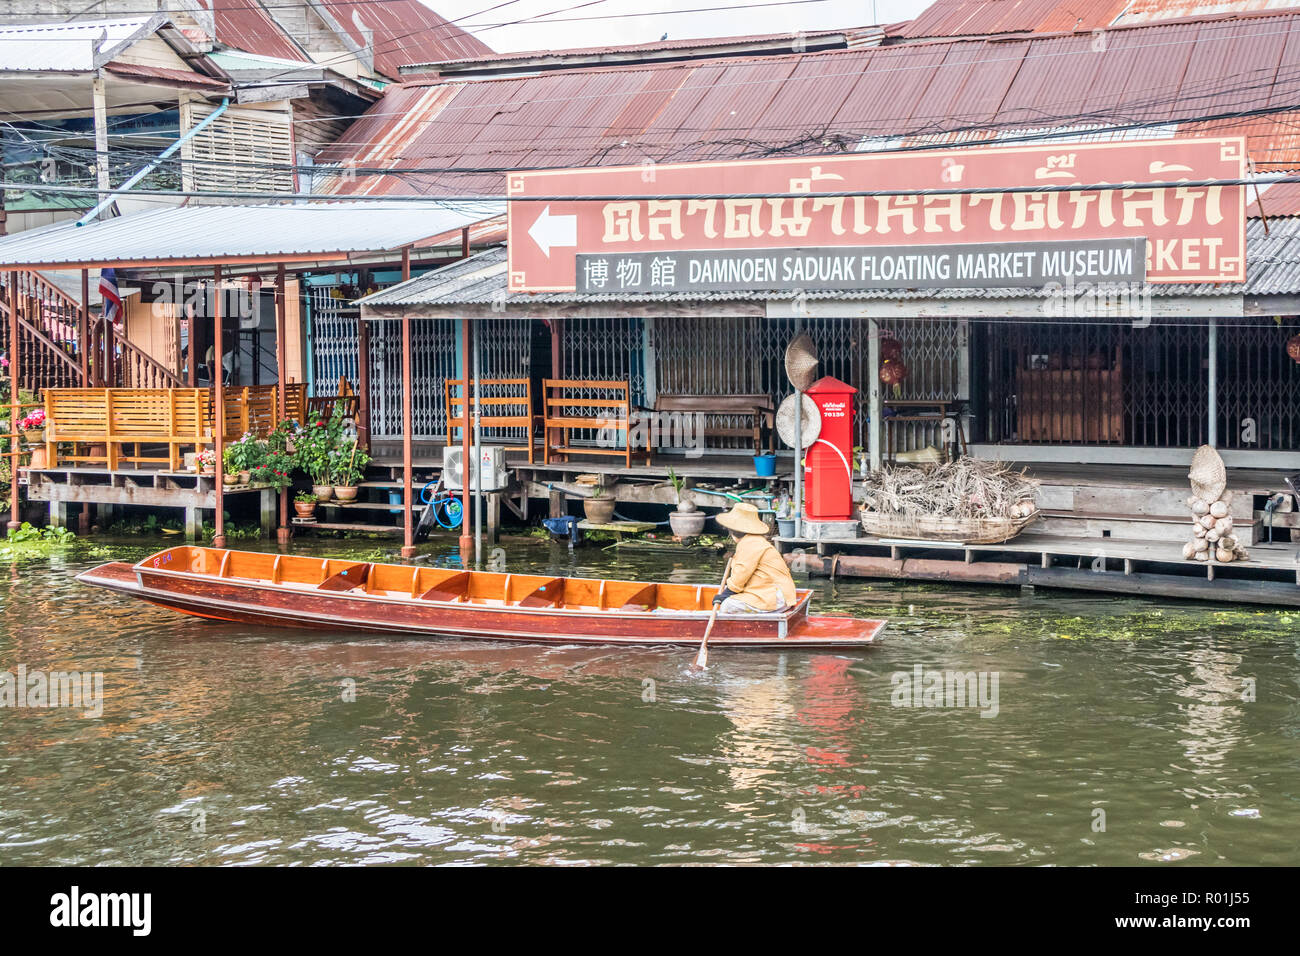 Damnoen Saduak, Tailandia - 8 de octubre de 2018: un barco pasa por el mercado flotante en museo. El mercado es un destino turístico muy poular. Foto de stock